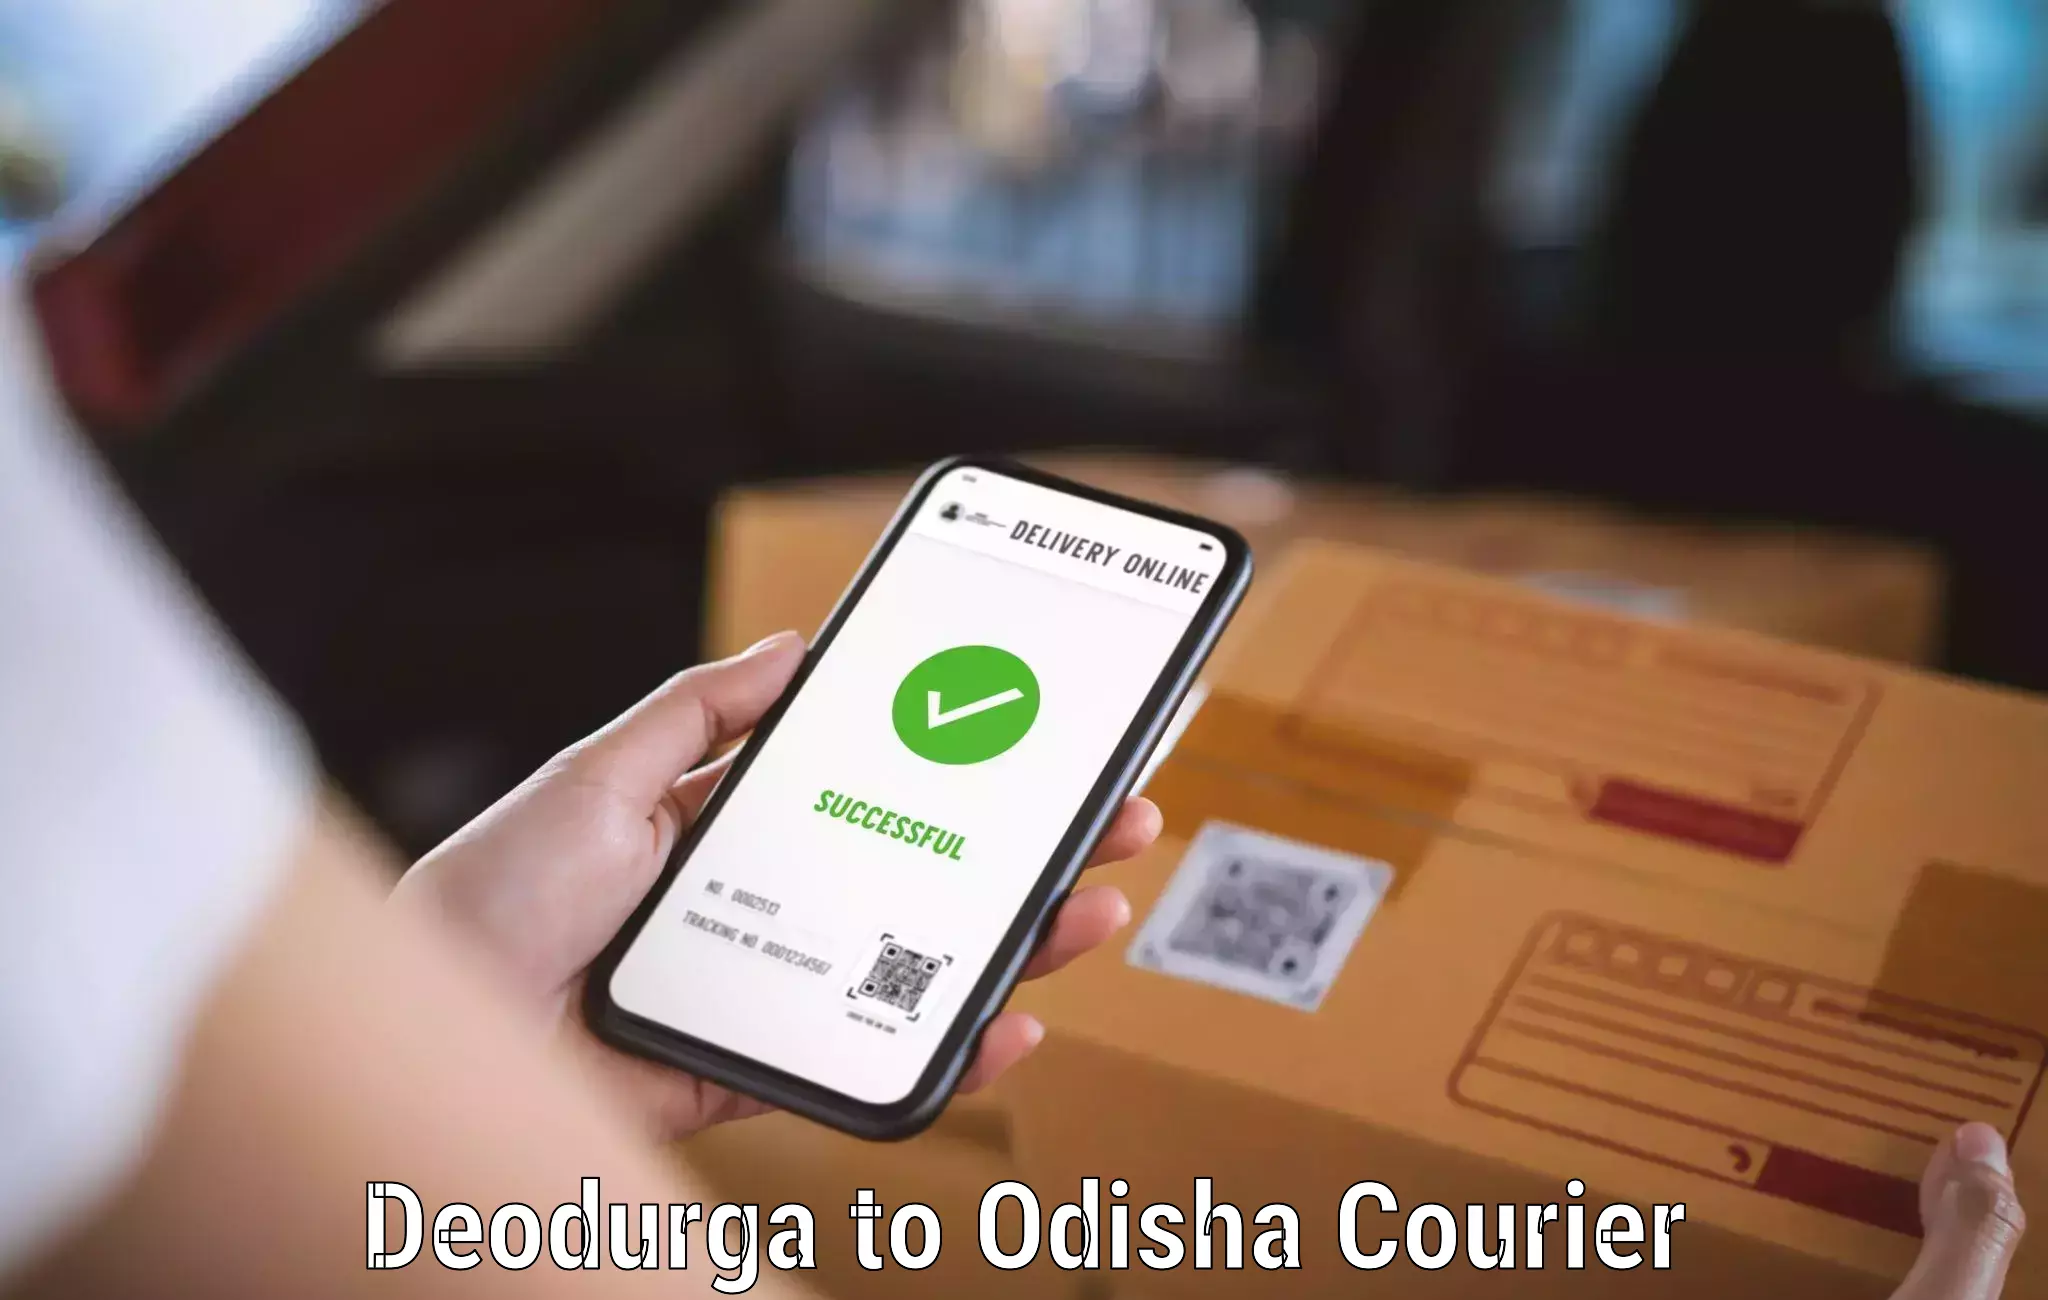 Next-day delivery options Deodurga to Koraput